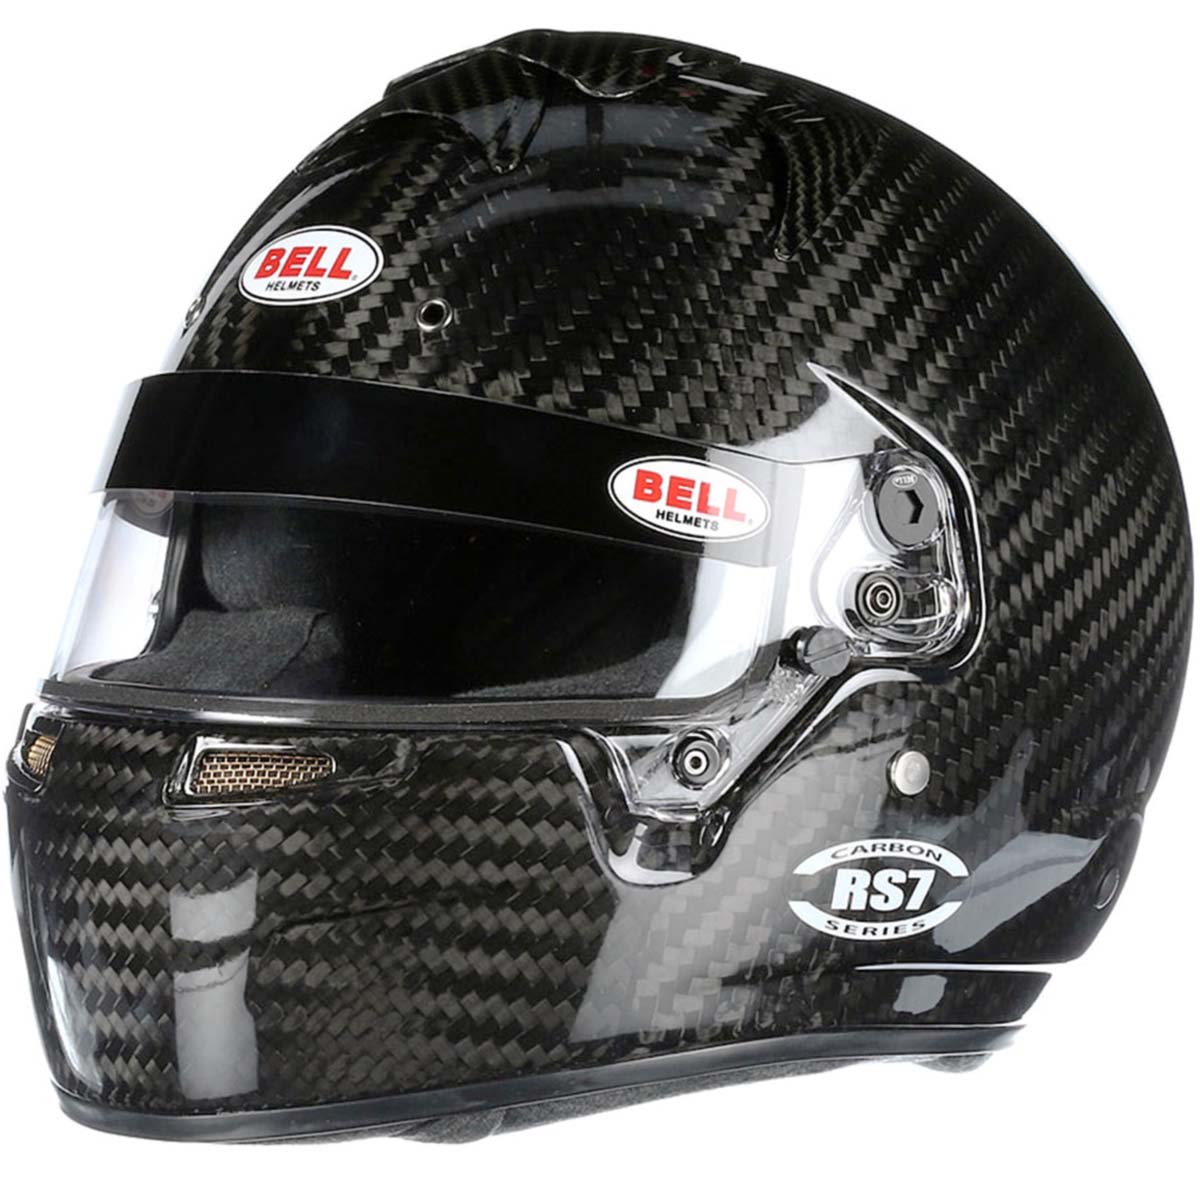 Bell RS7 Carbon Fiber Helmet left side high resolution image